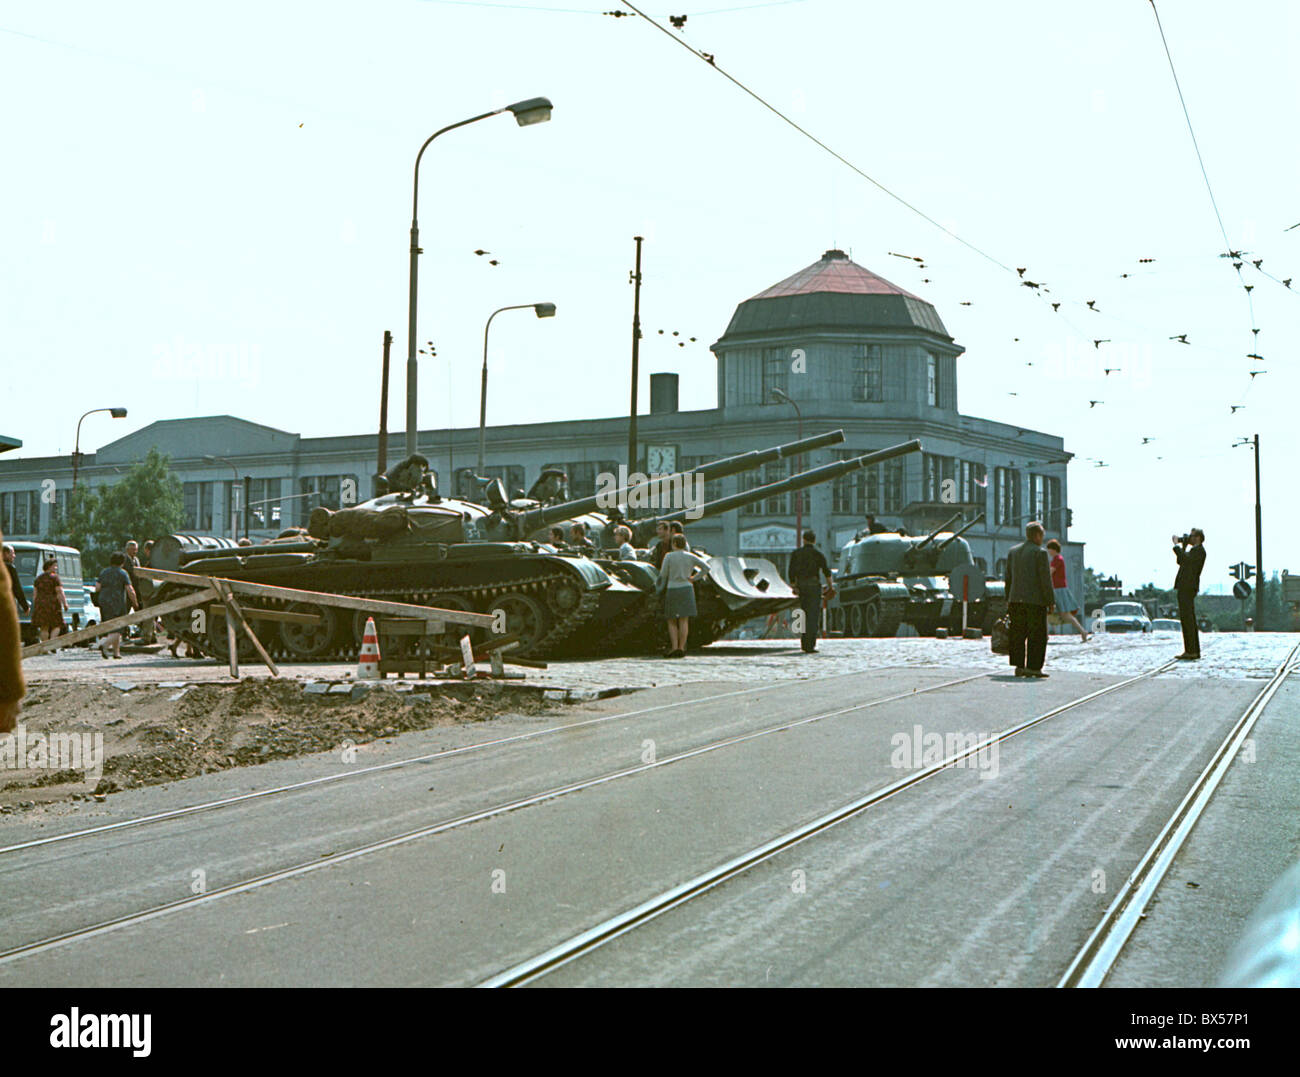 Les troupes de l'Union soviétique et ses alliés du Pacte de Varsovie ont envahi la Tchécoslovaquie le 21 août 1968 Politique d'arrêter Banque D'Images